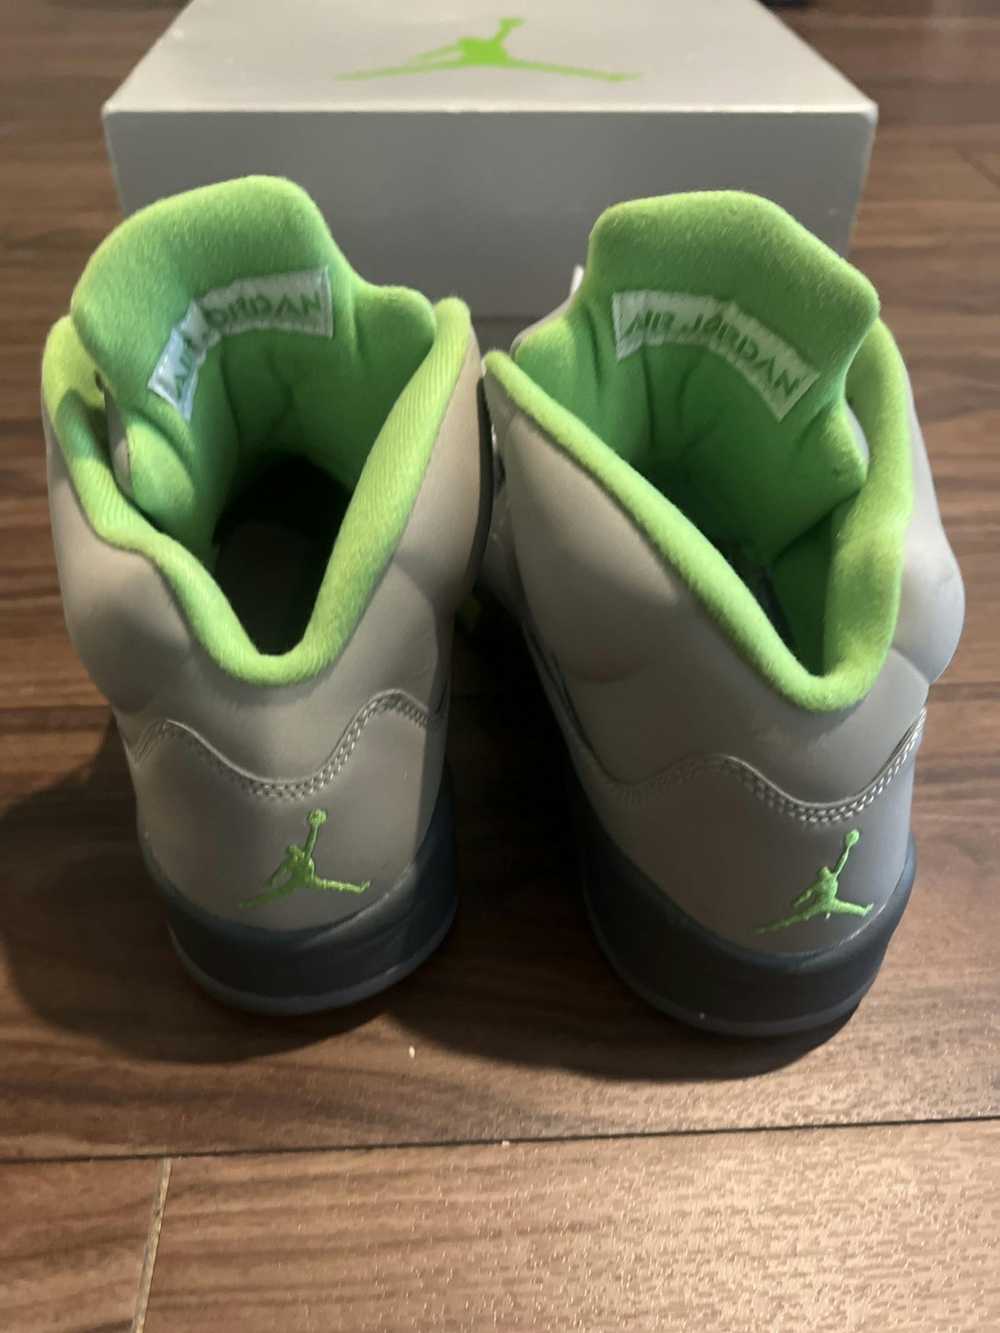 Jordan Brand × Nike Jordan 5 Retro “Green Bean” - image 3